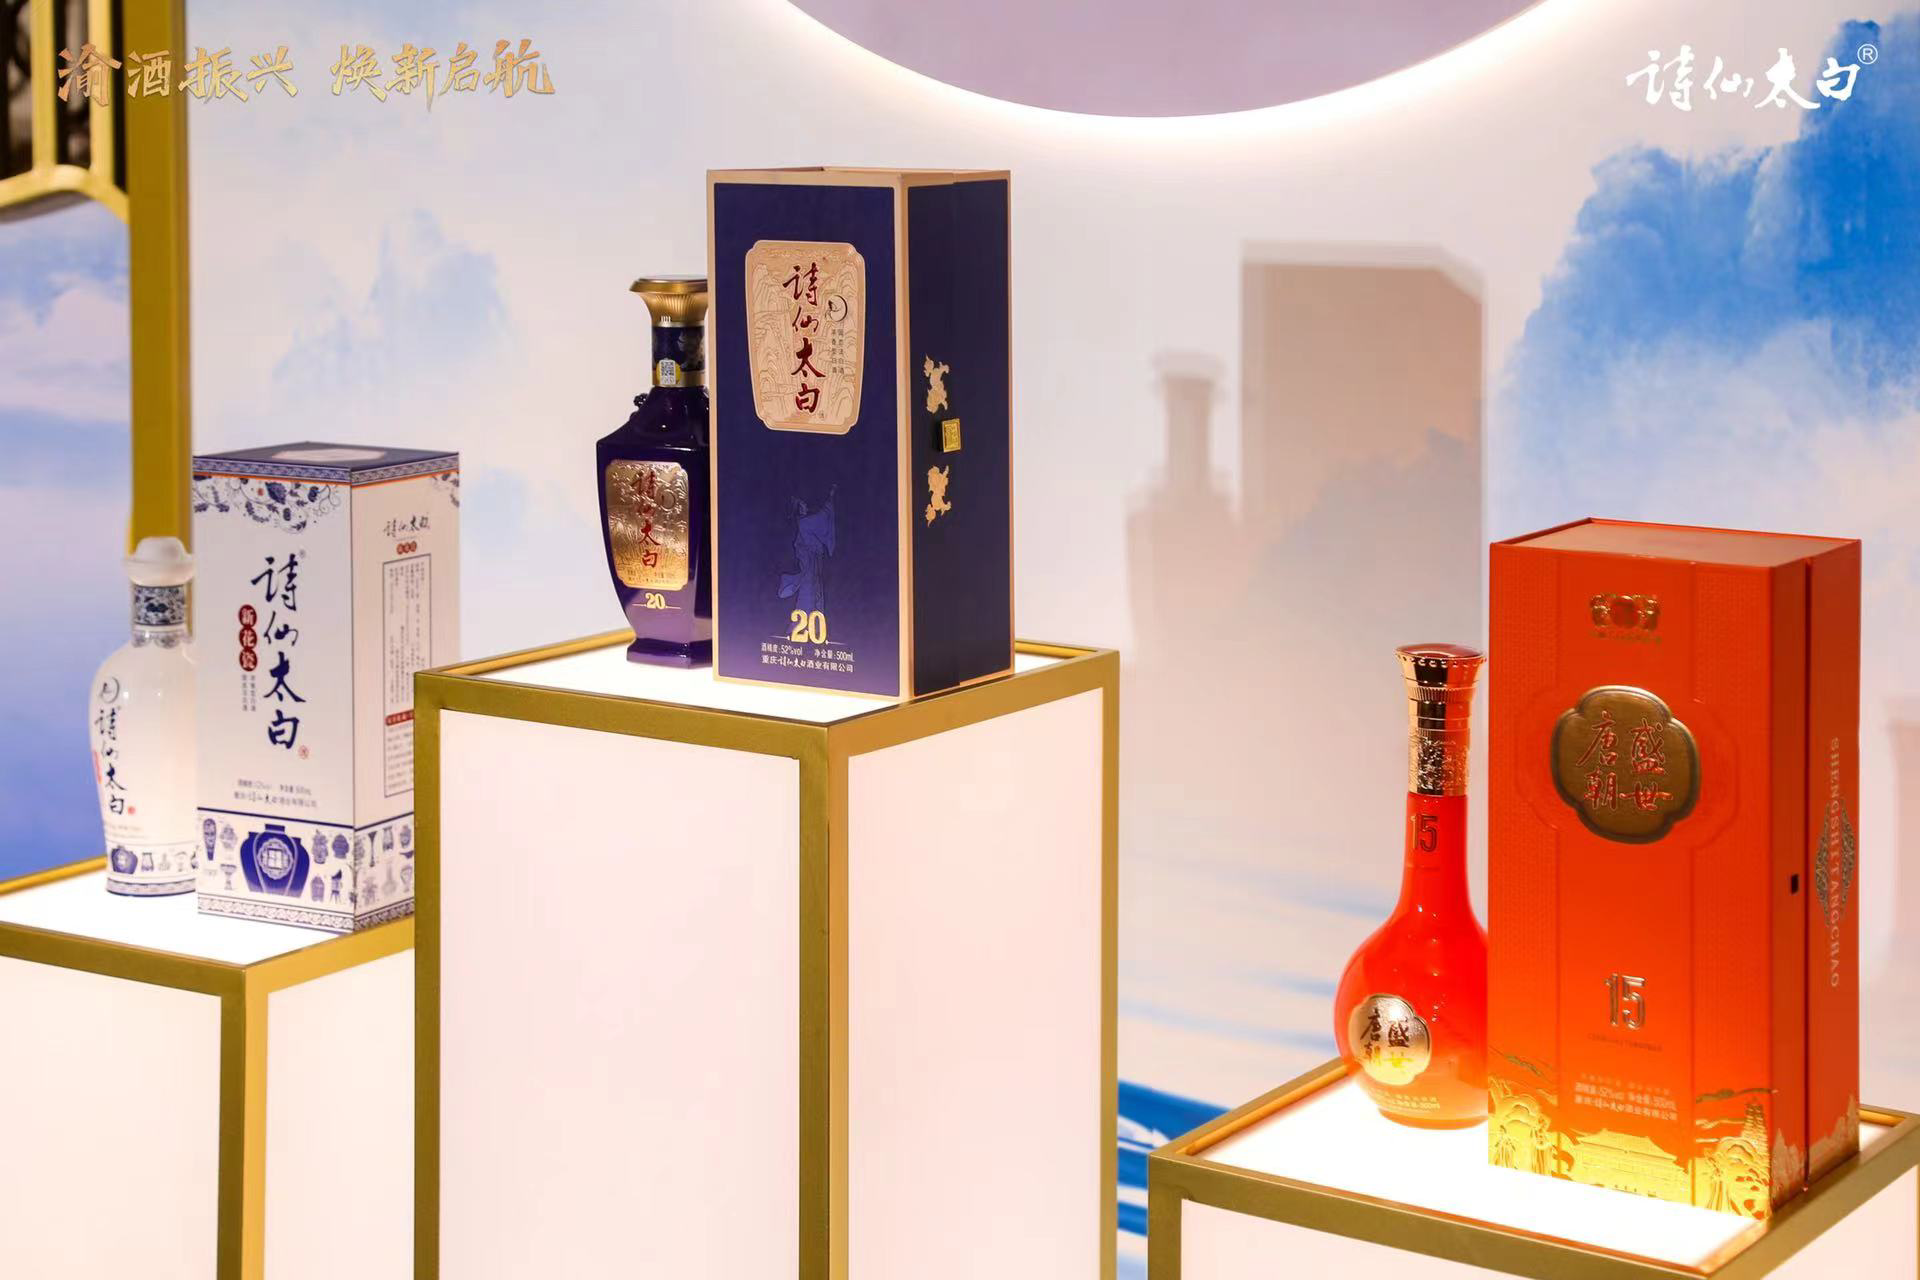 中国白酒产业再起波澜:渝酒振兴·诗仙太白焕新启航